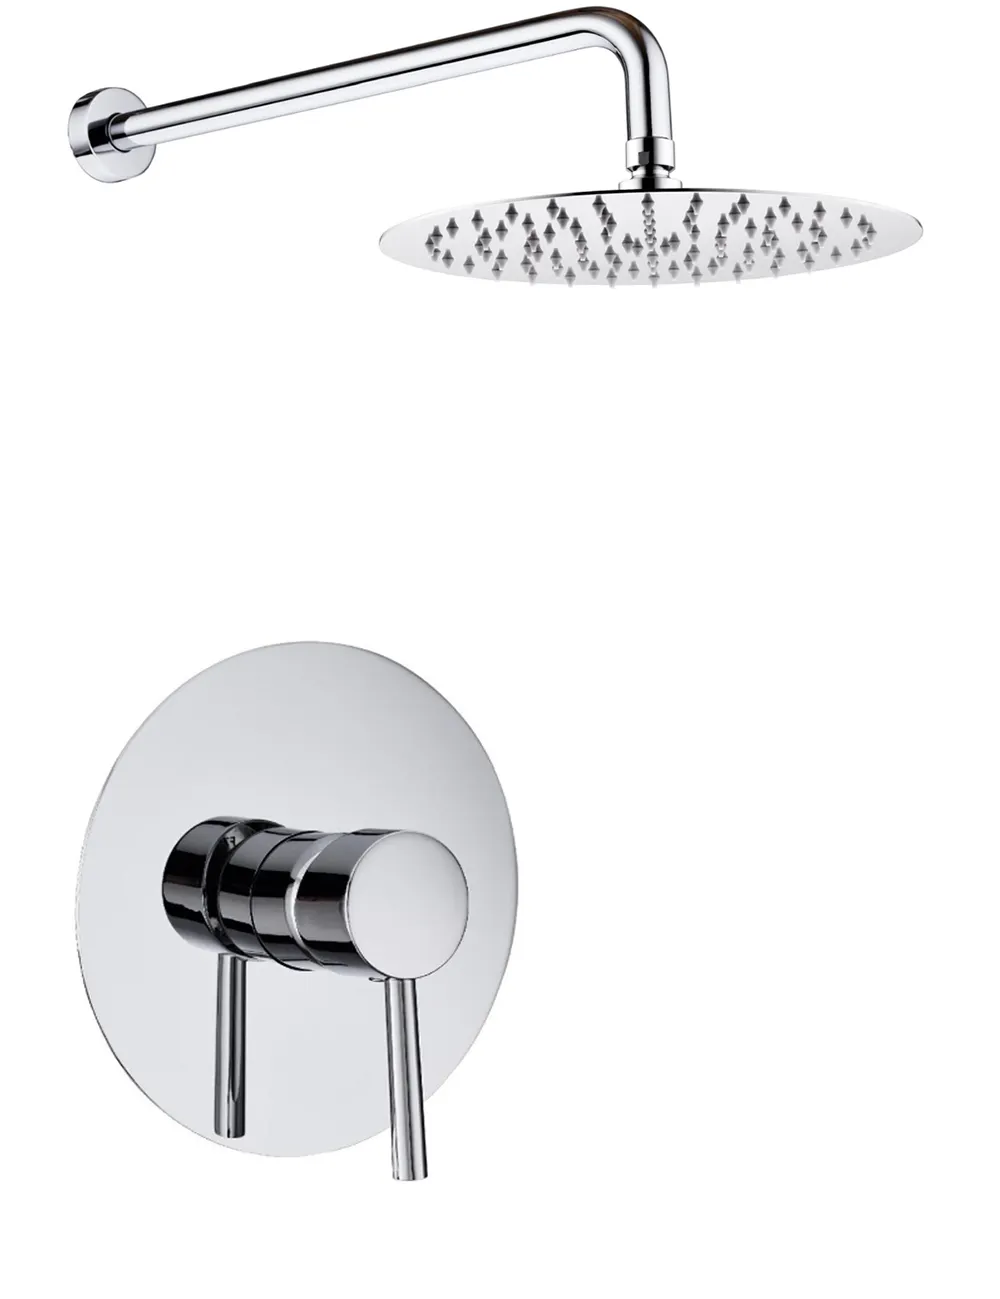 壁掛け式シャワー蛇口セットの高級シャワーコントロールバルブ浴室